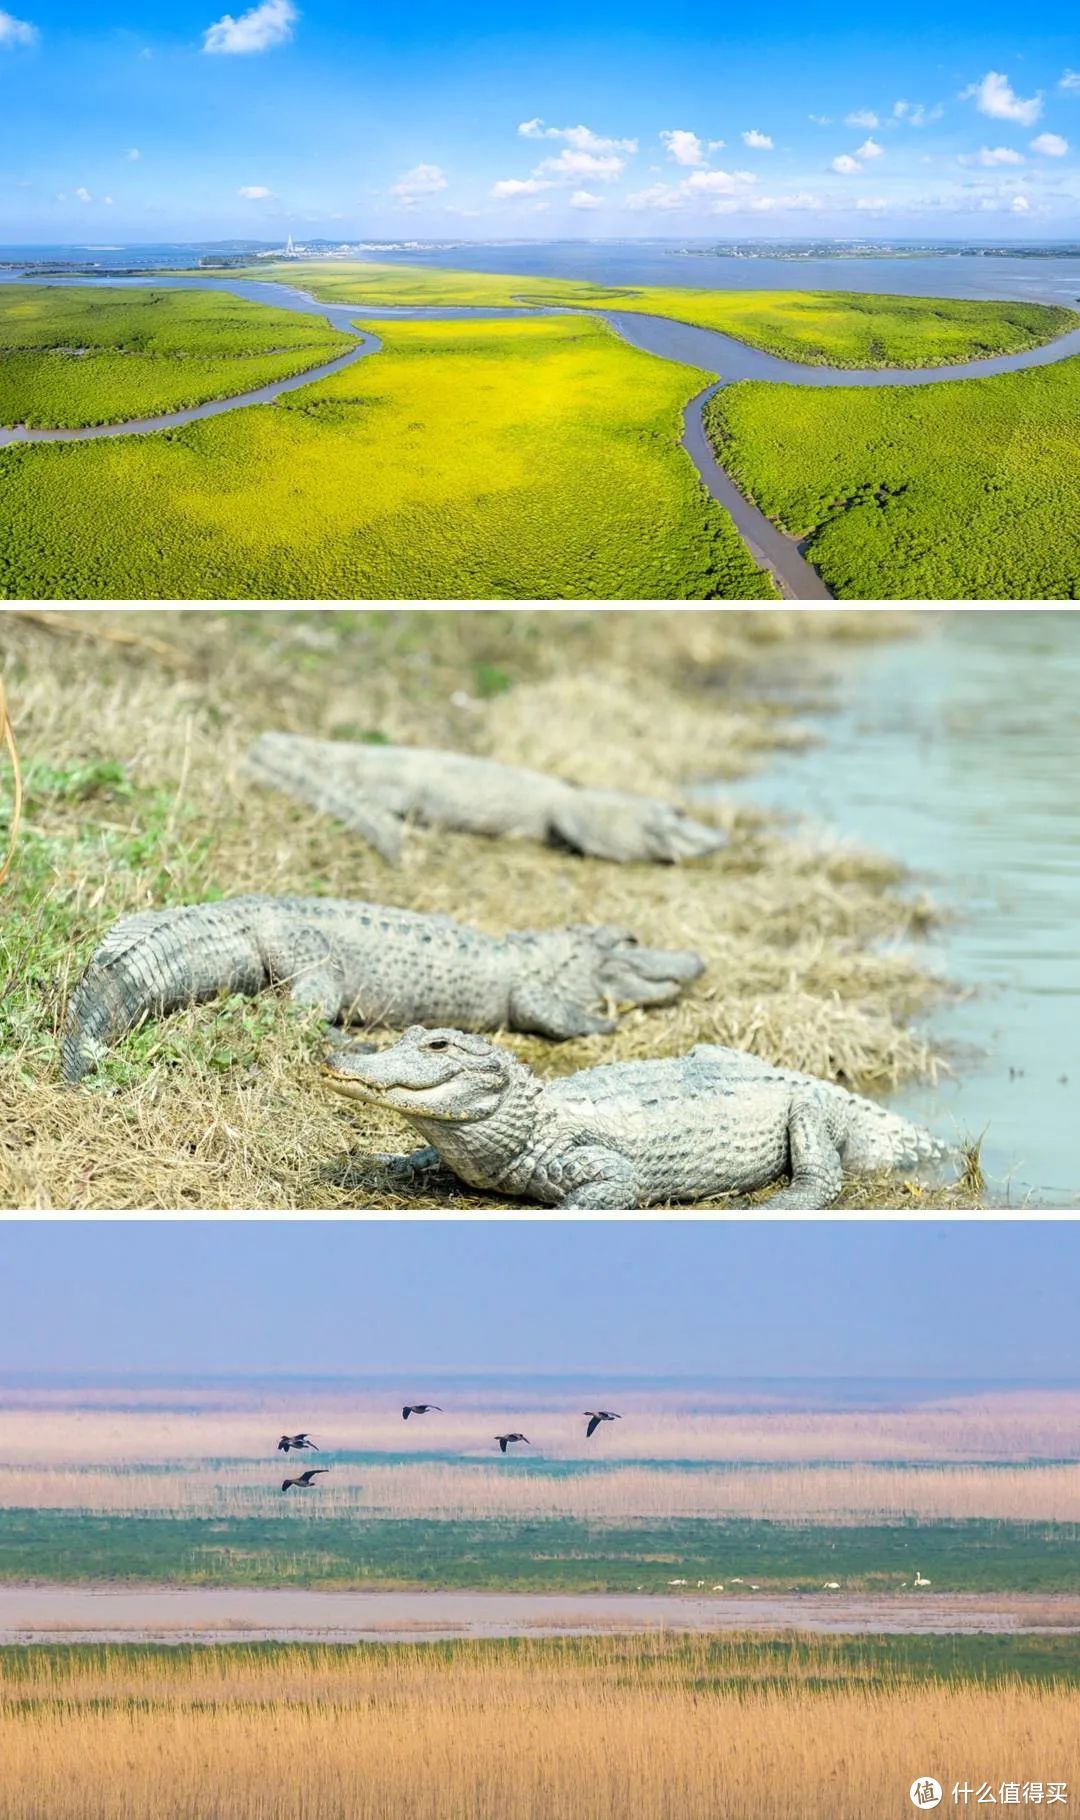 东寨港、扬子鳄保护区、鄱阳湖皆是首批中国世界遗产预备名单项目  ©图虫创意/网络